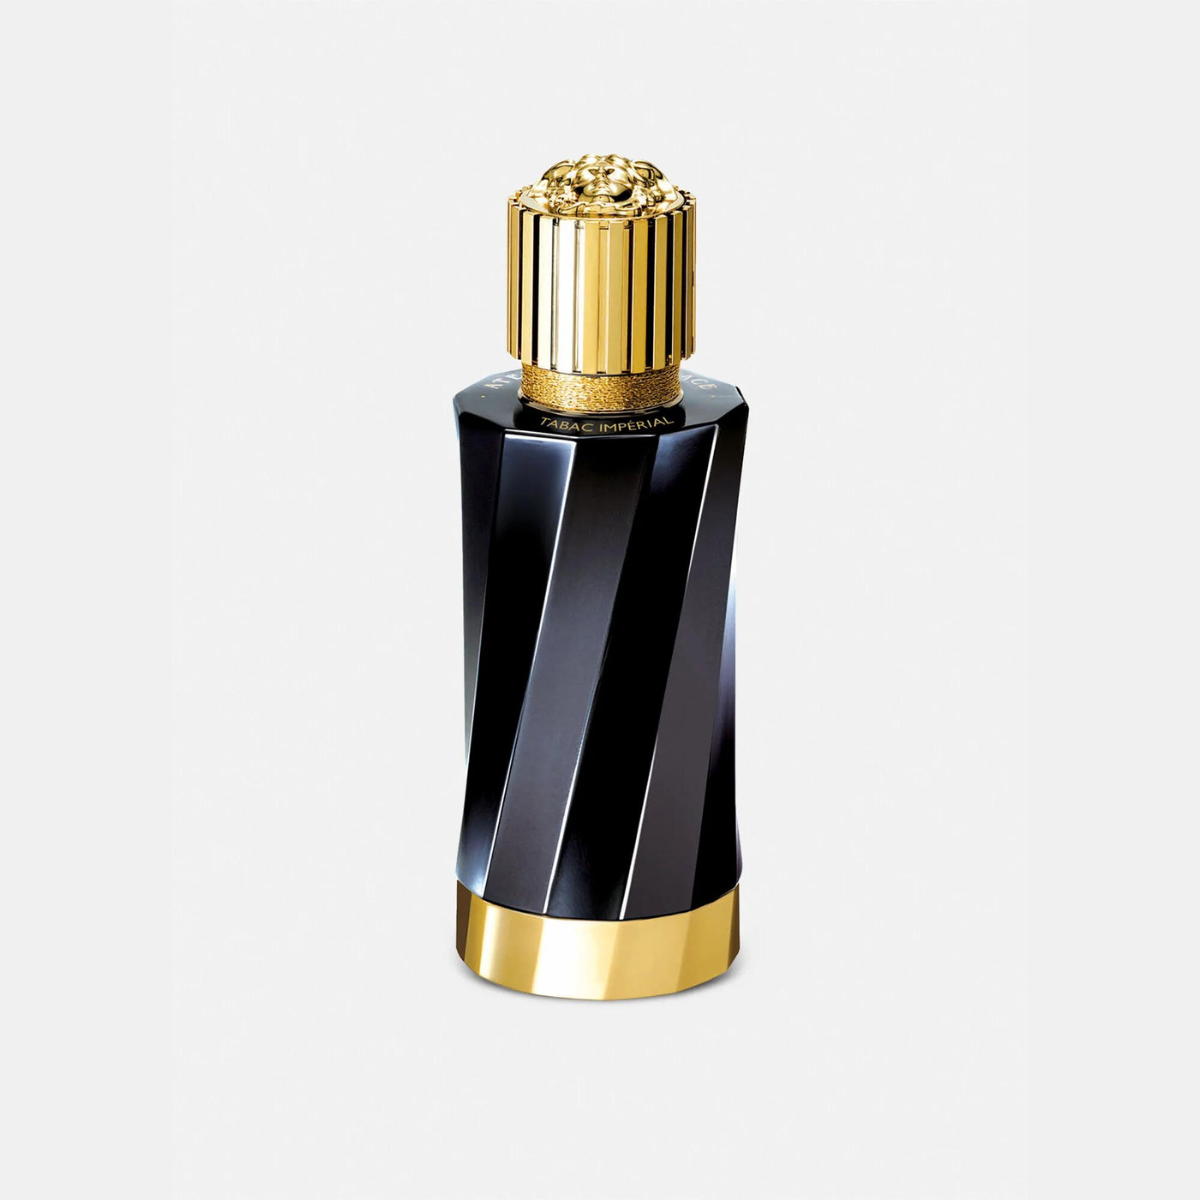 Versace Tabac Imperial Eau de Parfum